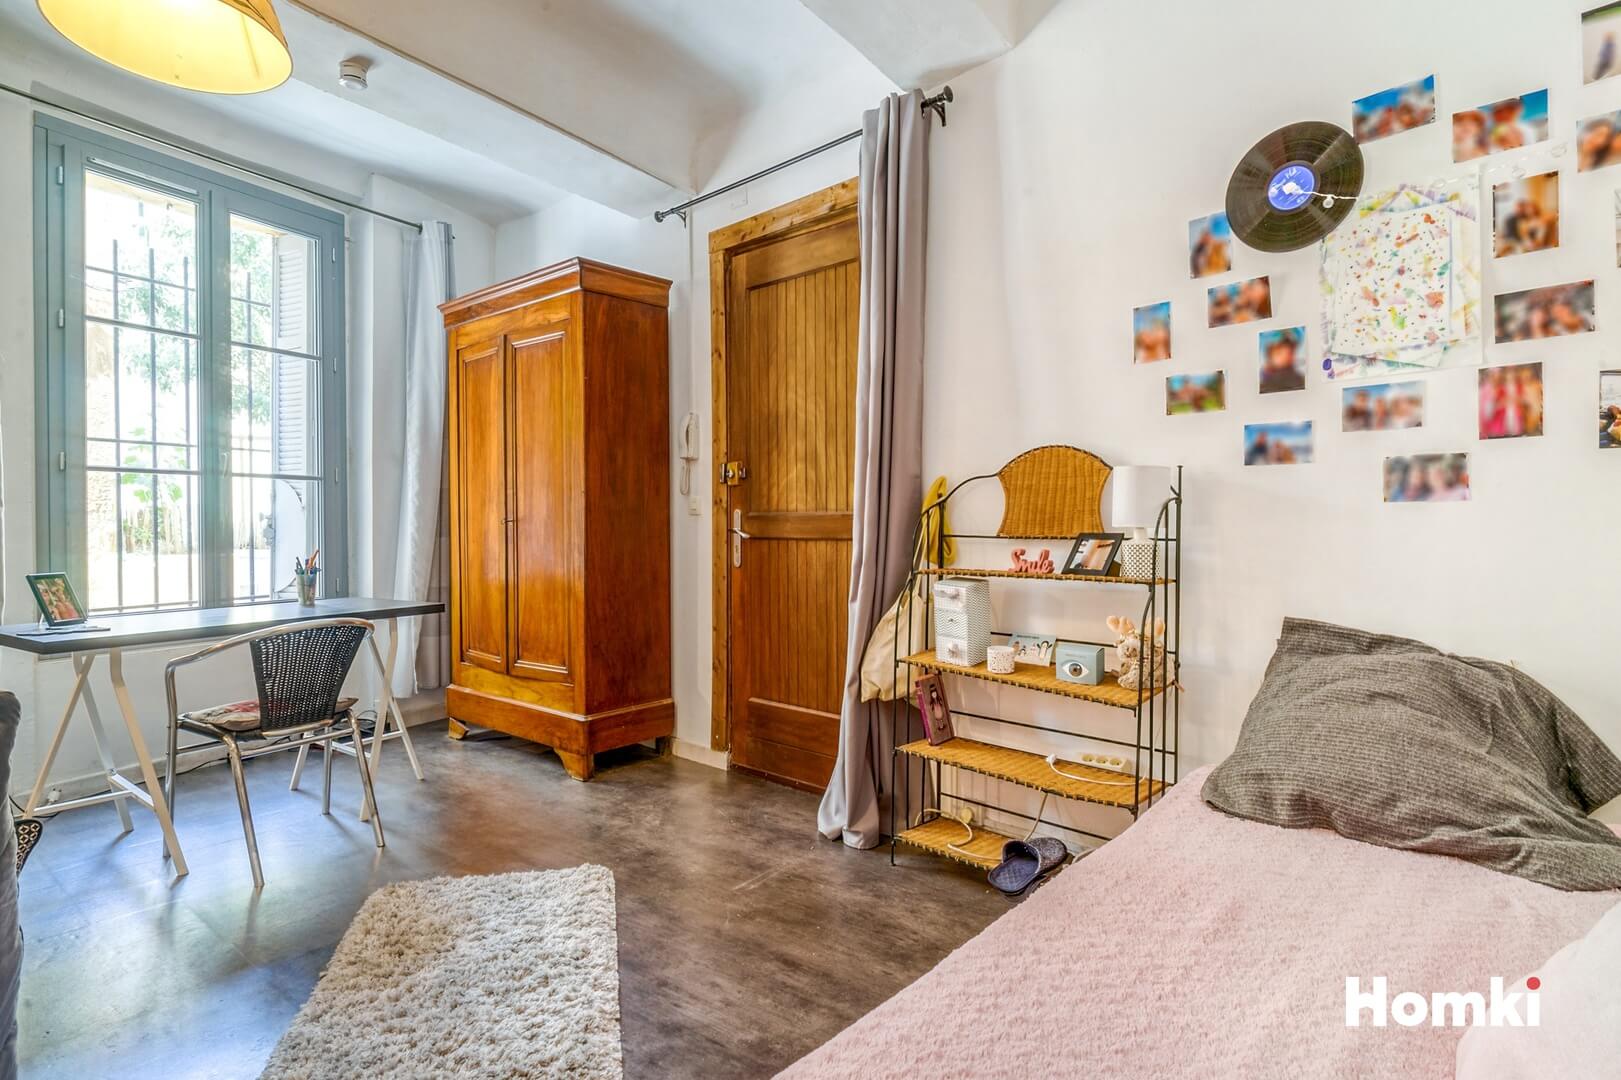 Homki - Vente Appartement  de 29.0 m² à Aix-en-Provence 13100